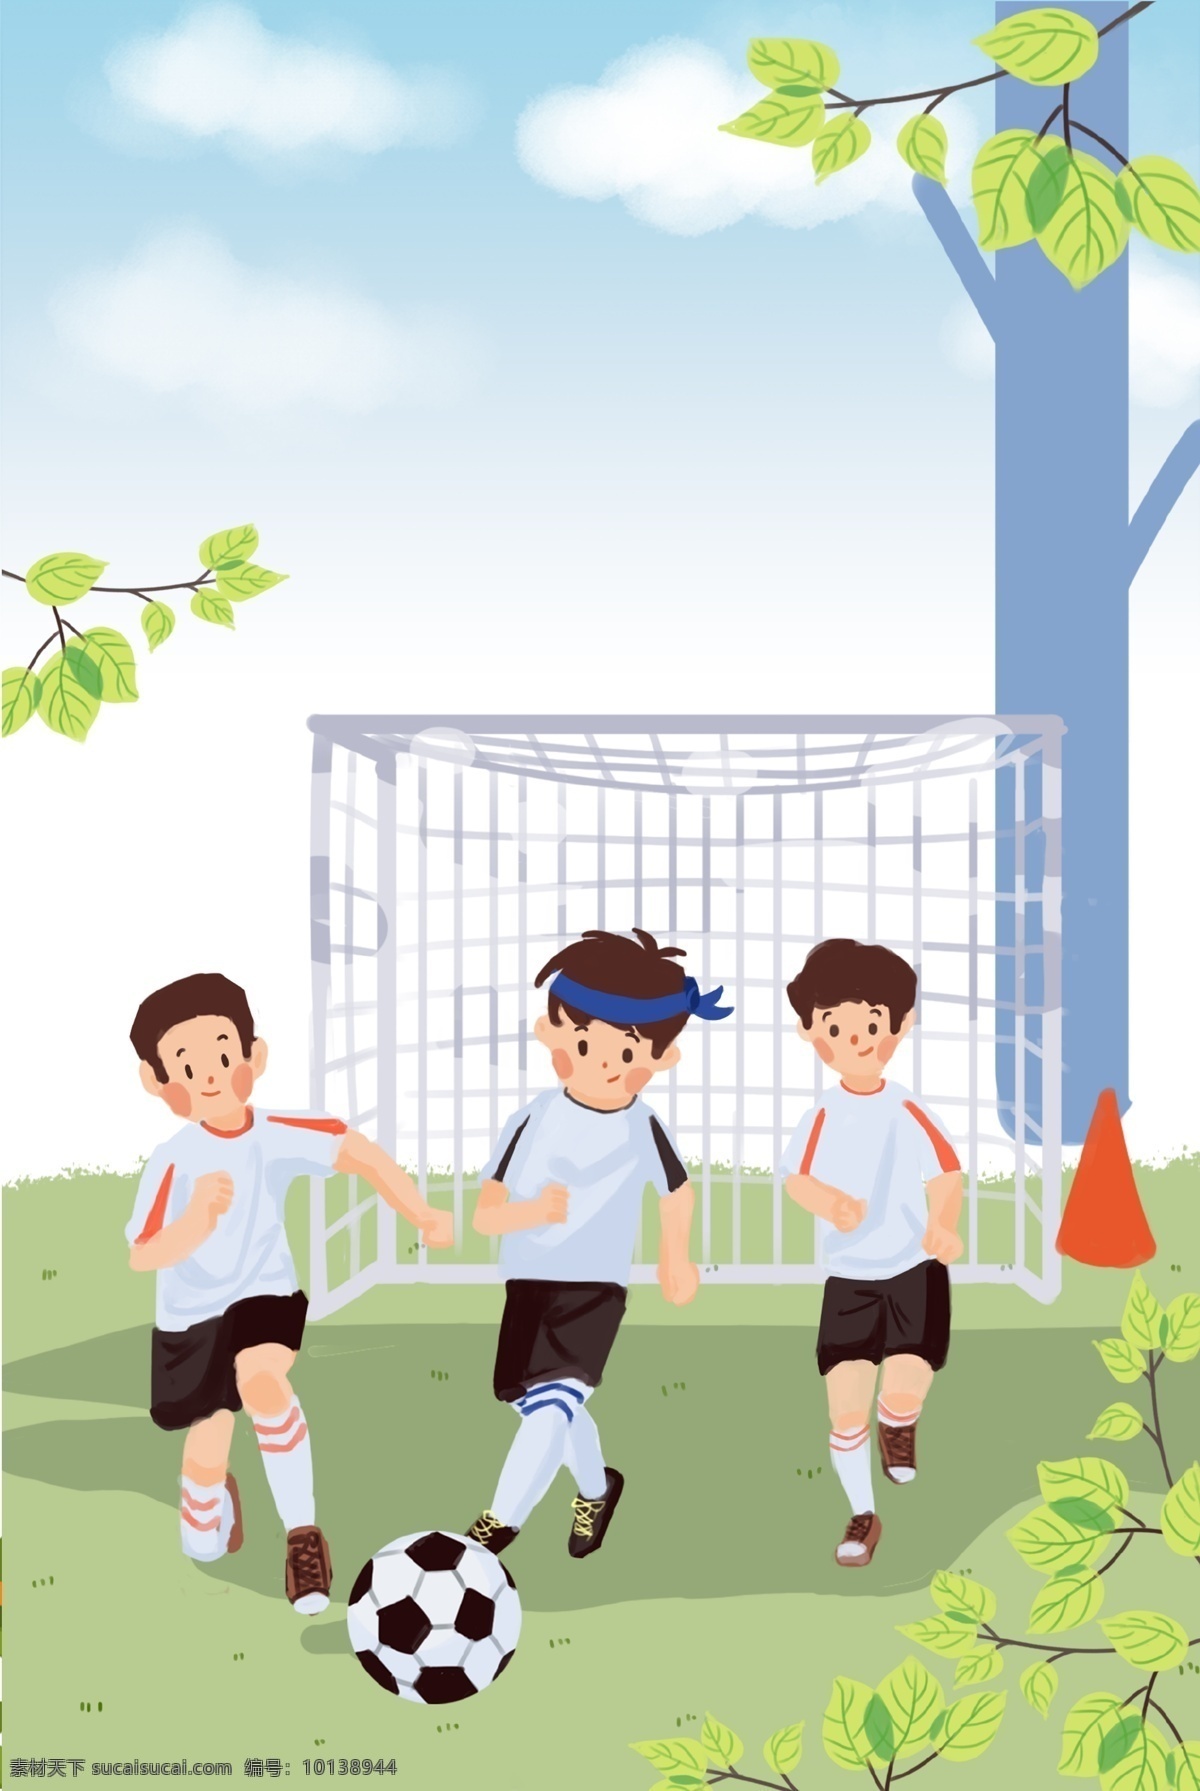 春季 运动会 背景 踢球 健康 大树 植物 绿色 赛场 赛道 跑步 运动